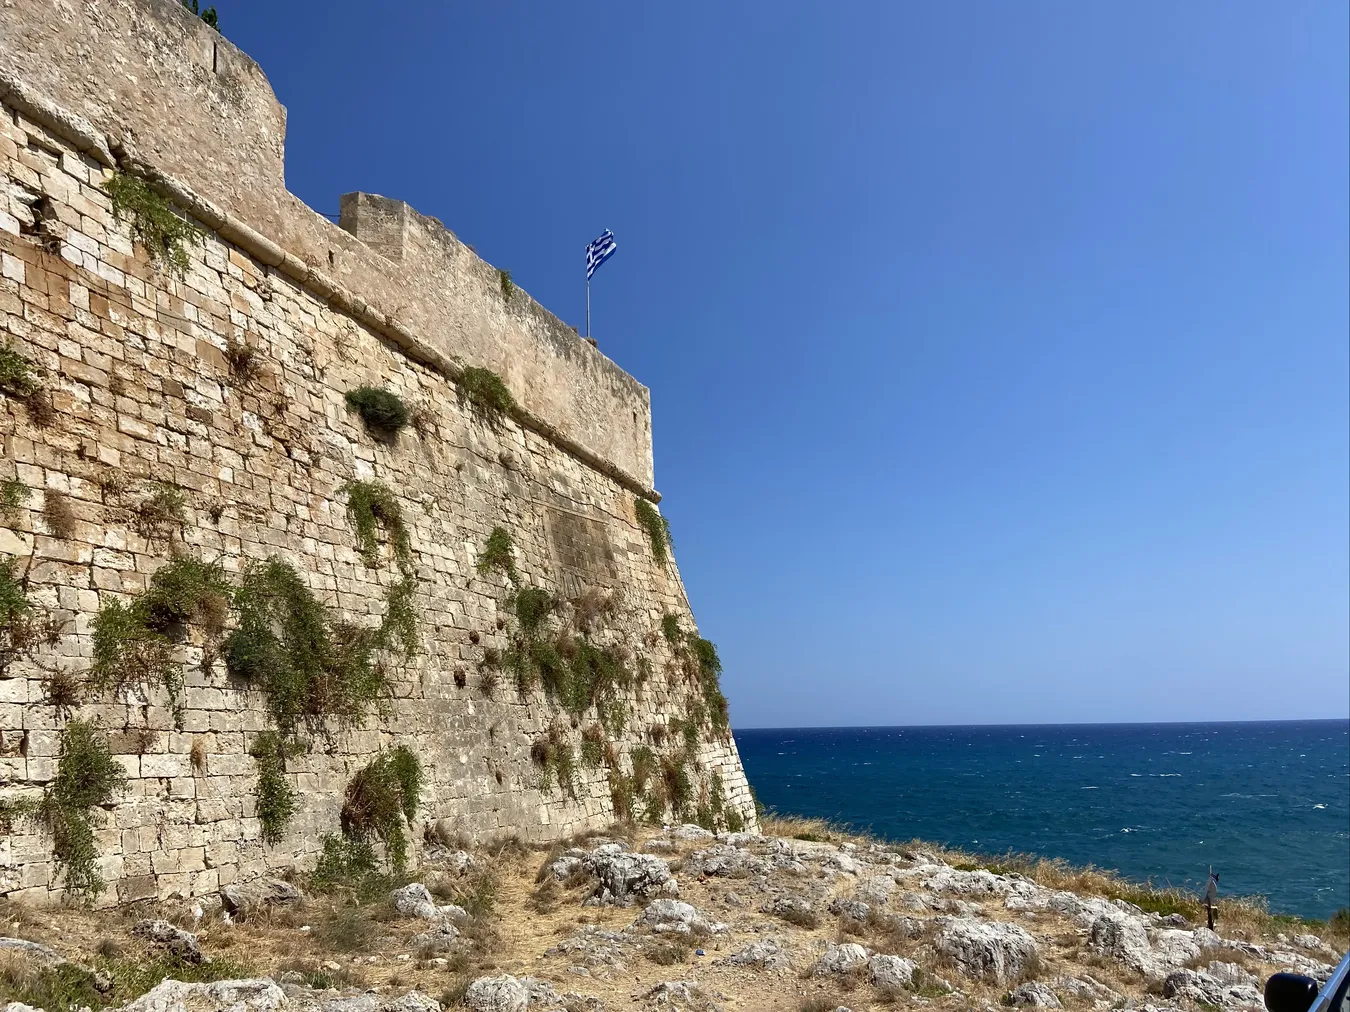 Muralla de la fortaleza desde el exterior con la bandera griega ondeando.